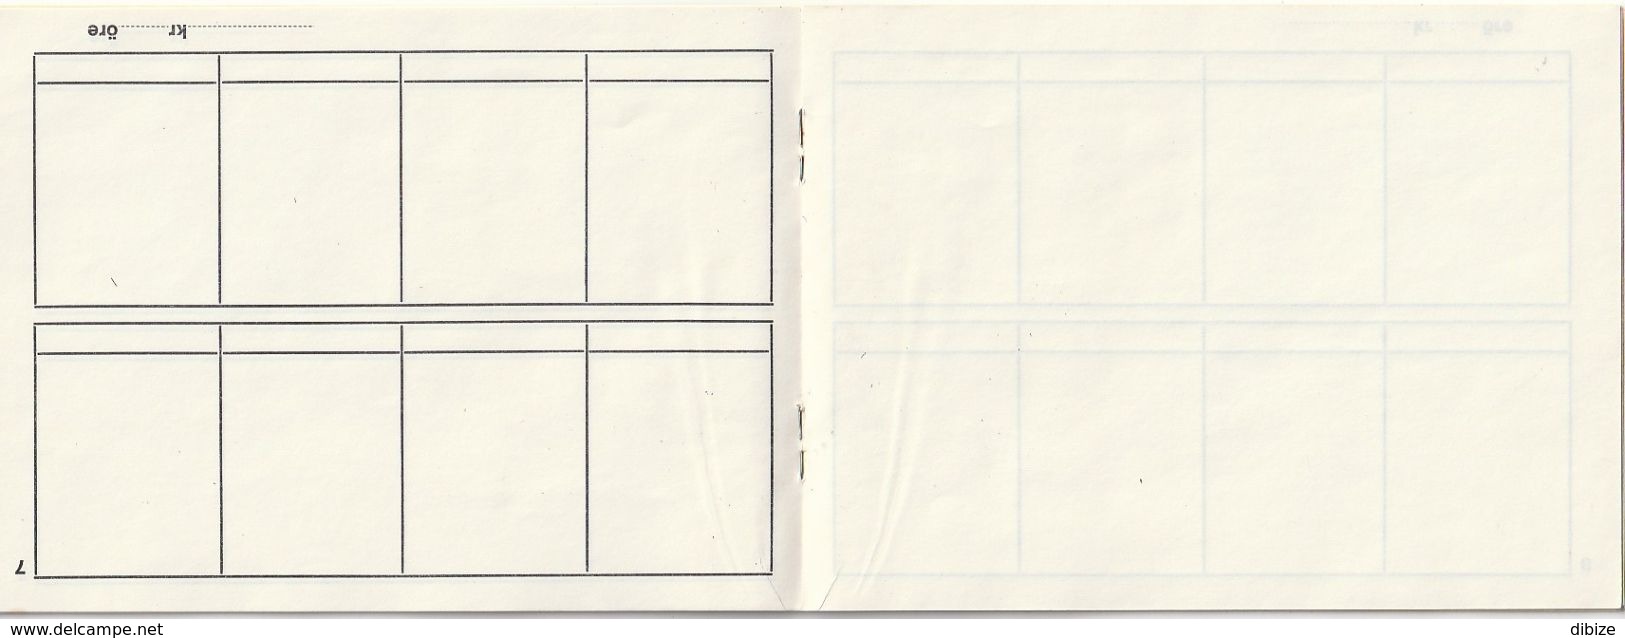 Sweden. Stamp Album. Selection Booklet. 12 Sheets Including 1 Full. - Klein Formaat, Blanco Pagina